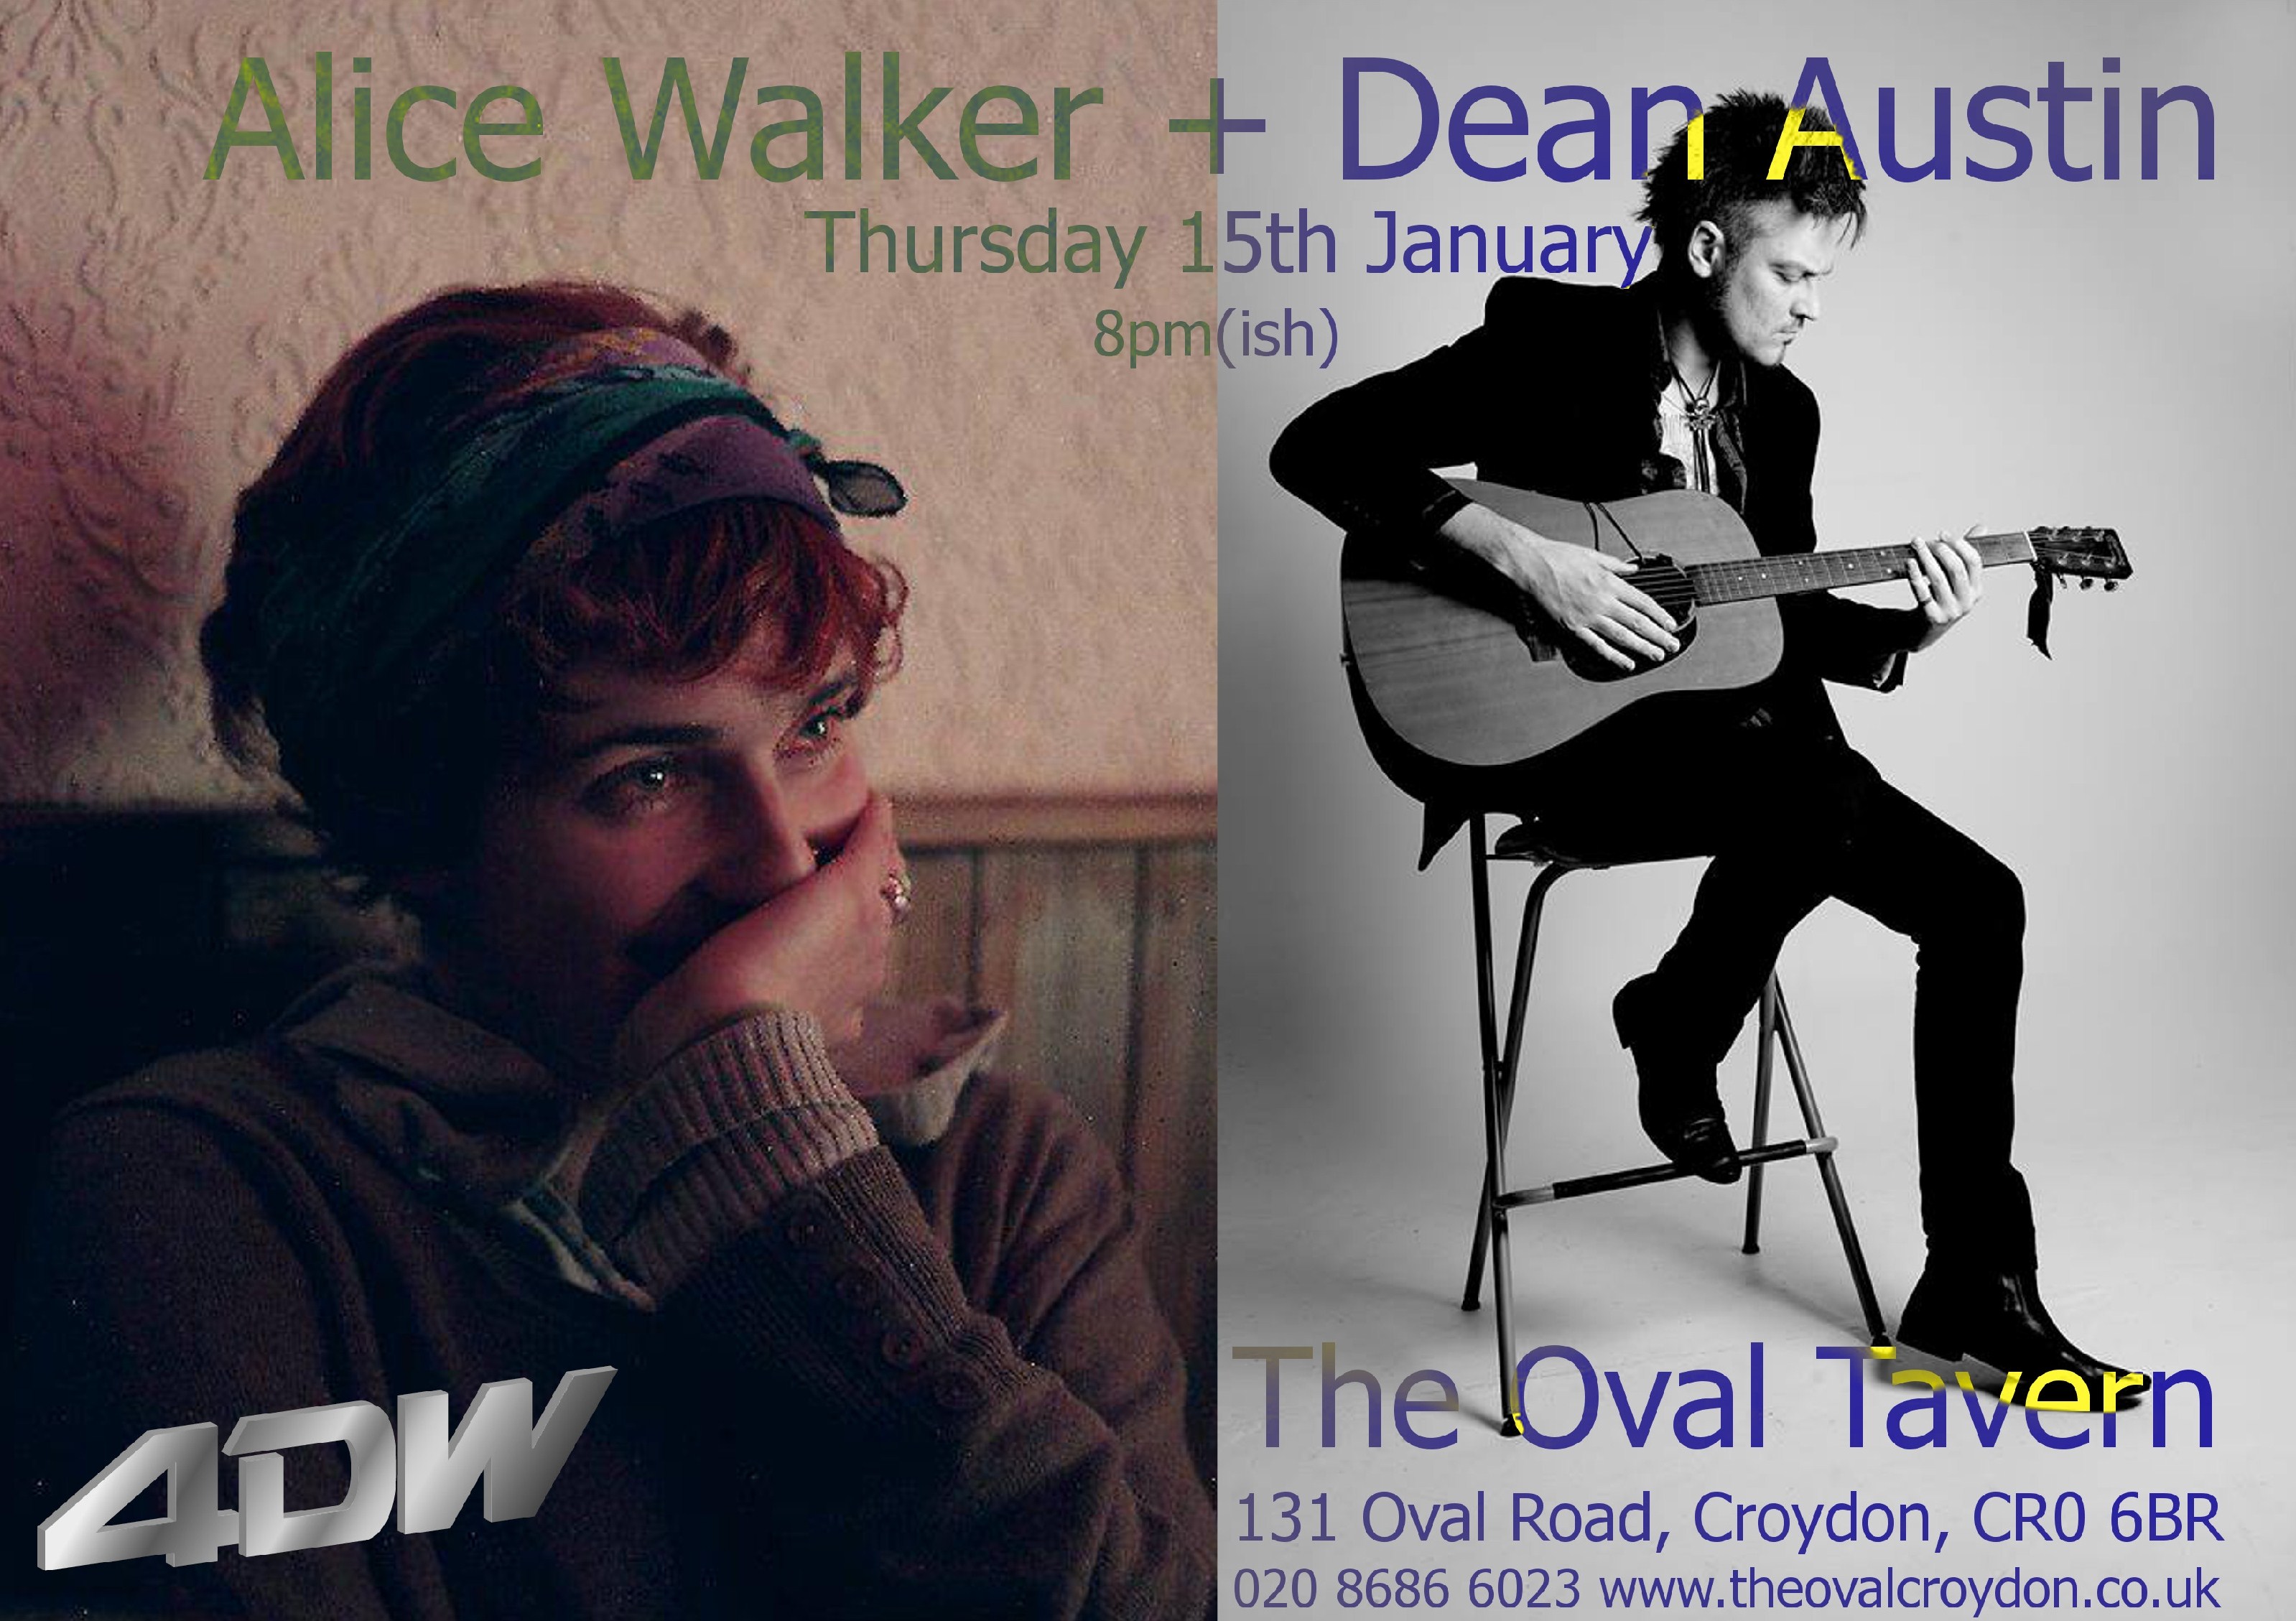 4 Day Weekend: Alice Walker + Dean Austin